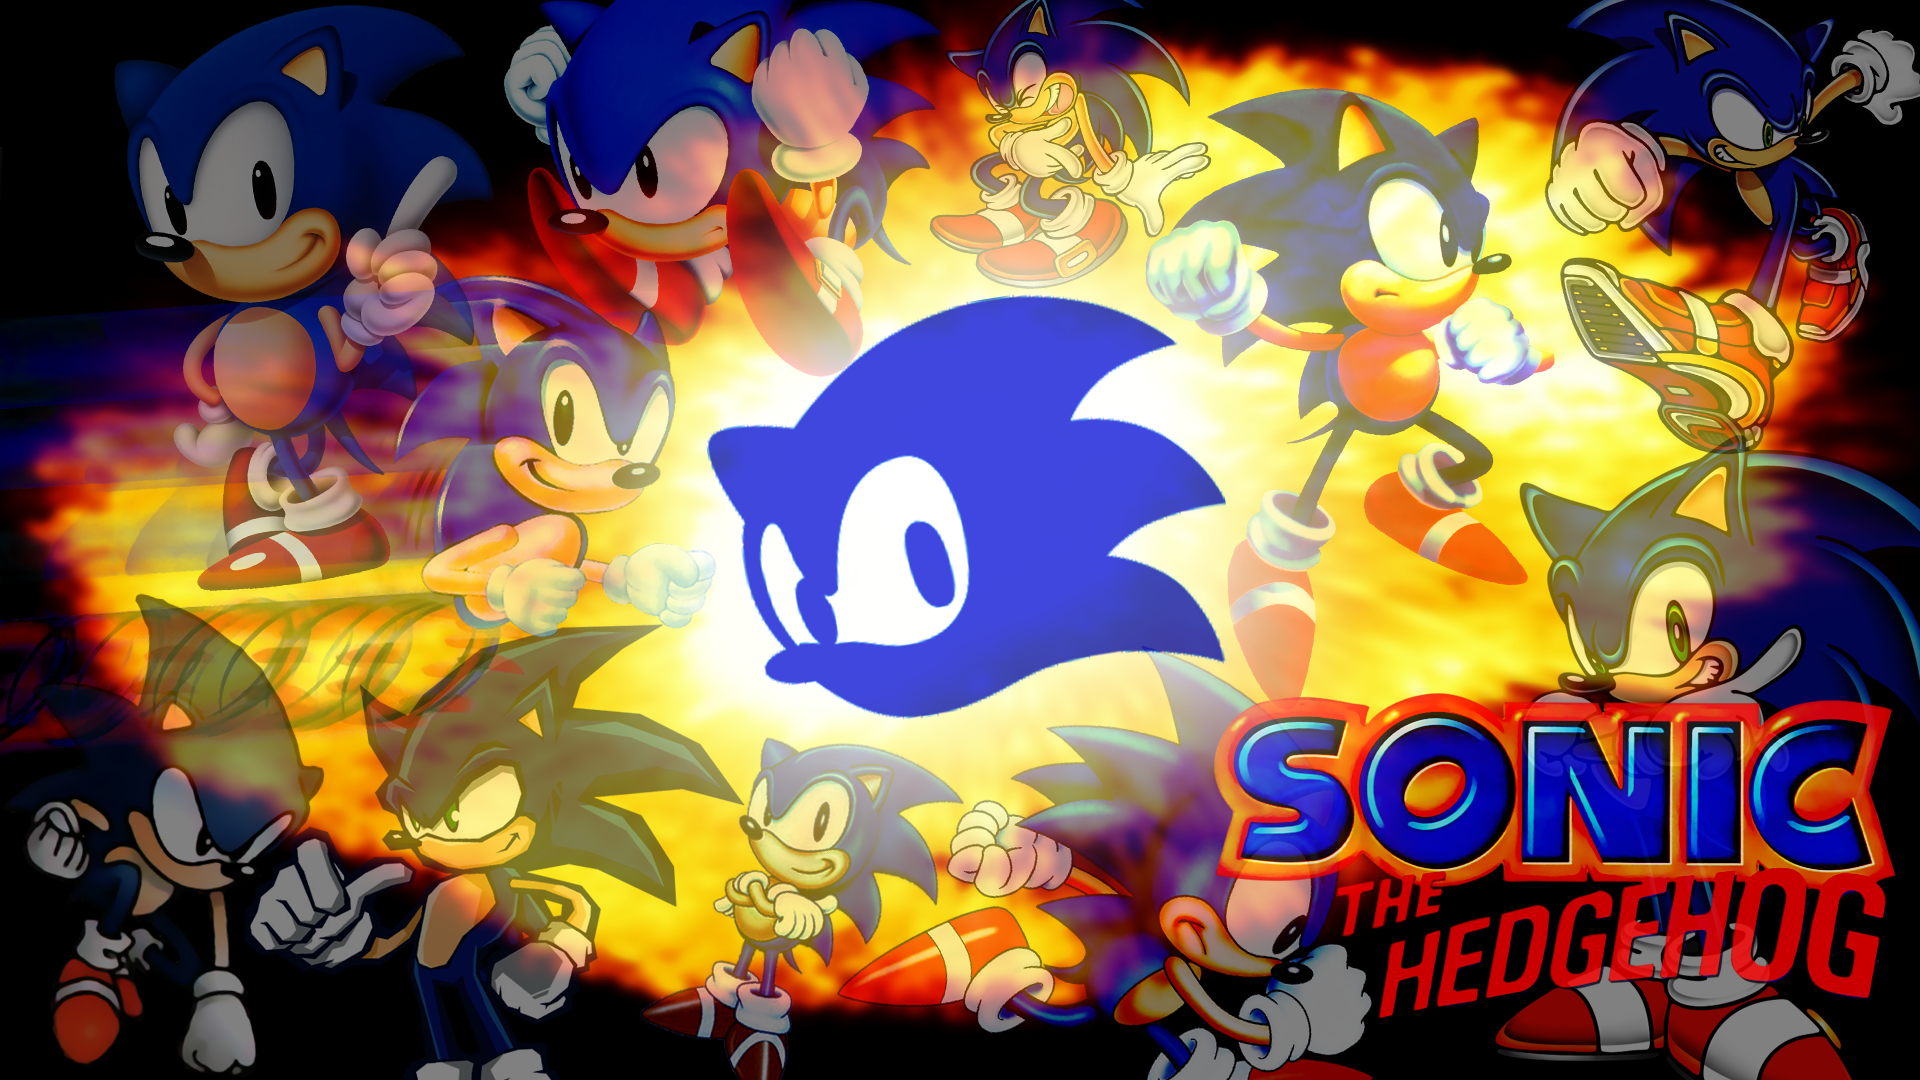 Les Dejo Algunos Wallpaper En HD De Sonic Espero Gusten Saludos